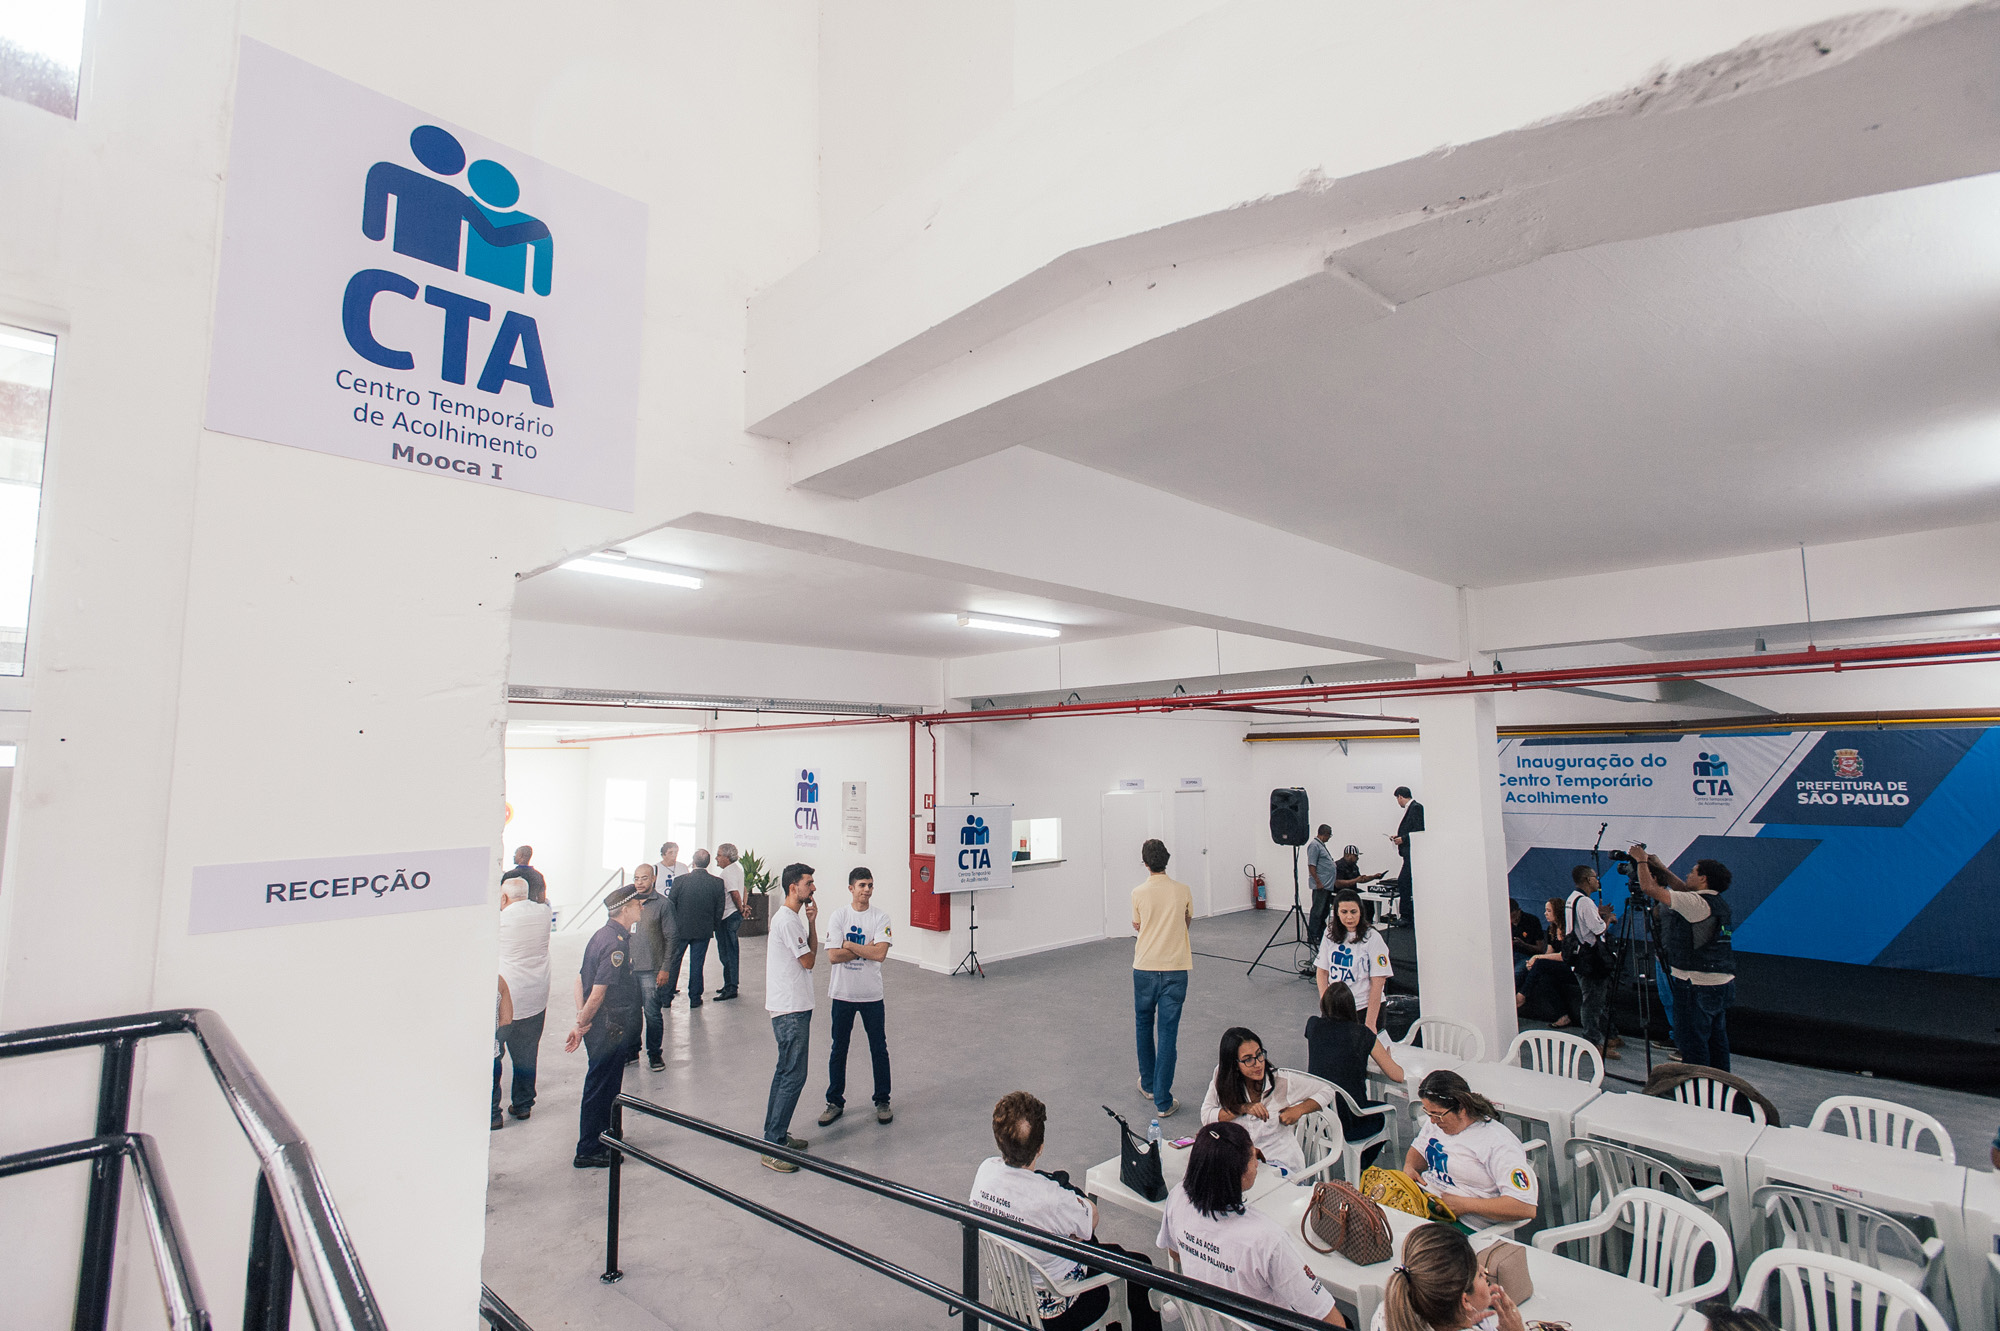 970275-Inauguração do 11º CTA – CENTRO TEMPORÁRIO de ACOLHIMENTO – MOOCA 1